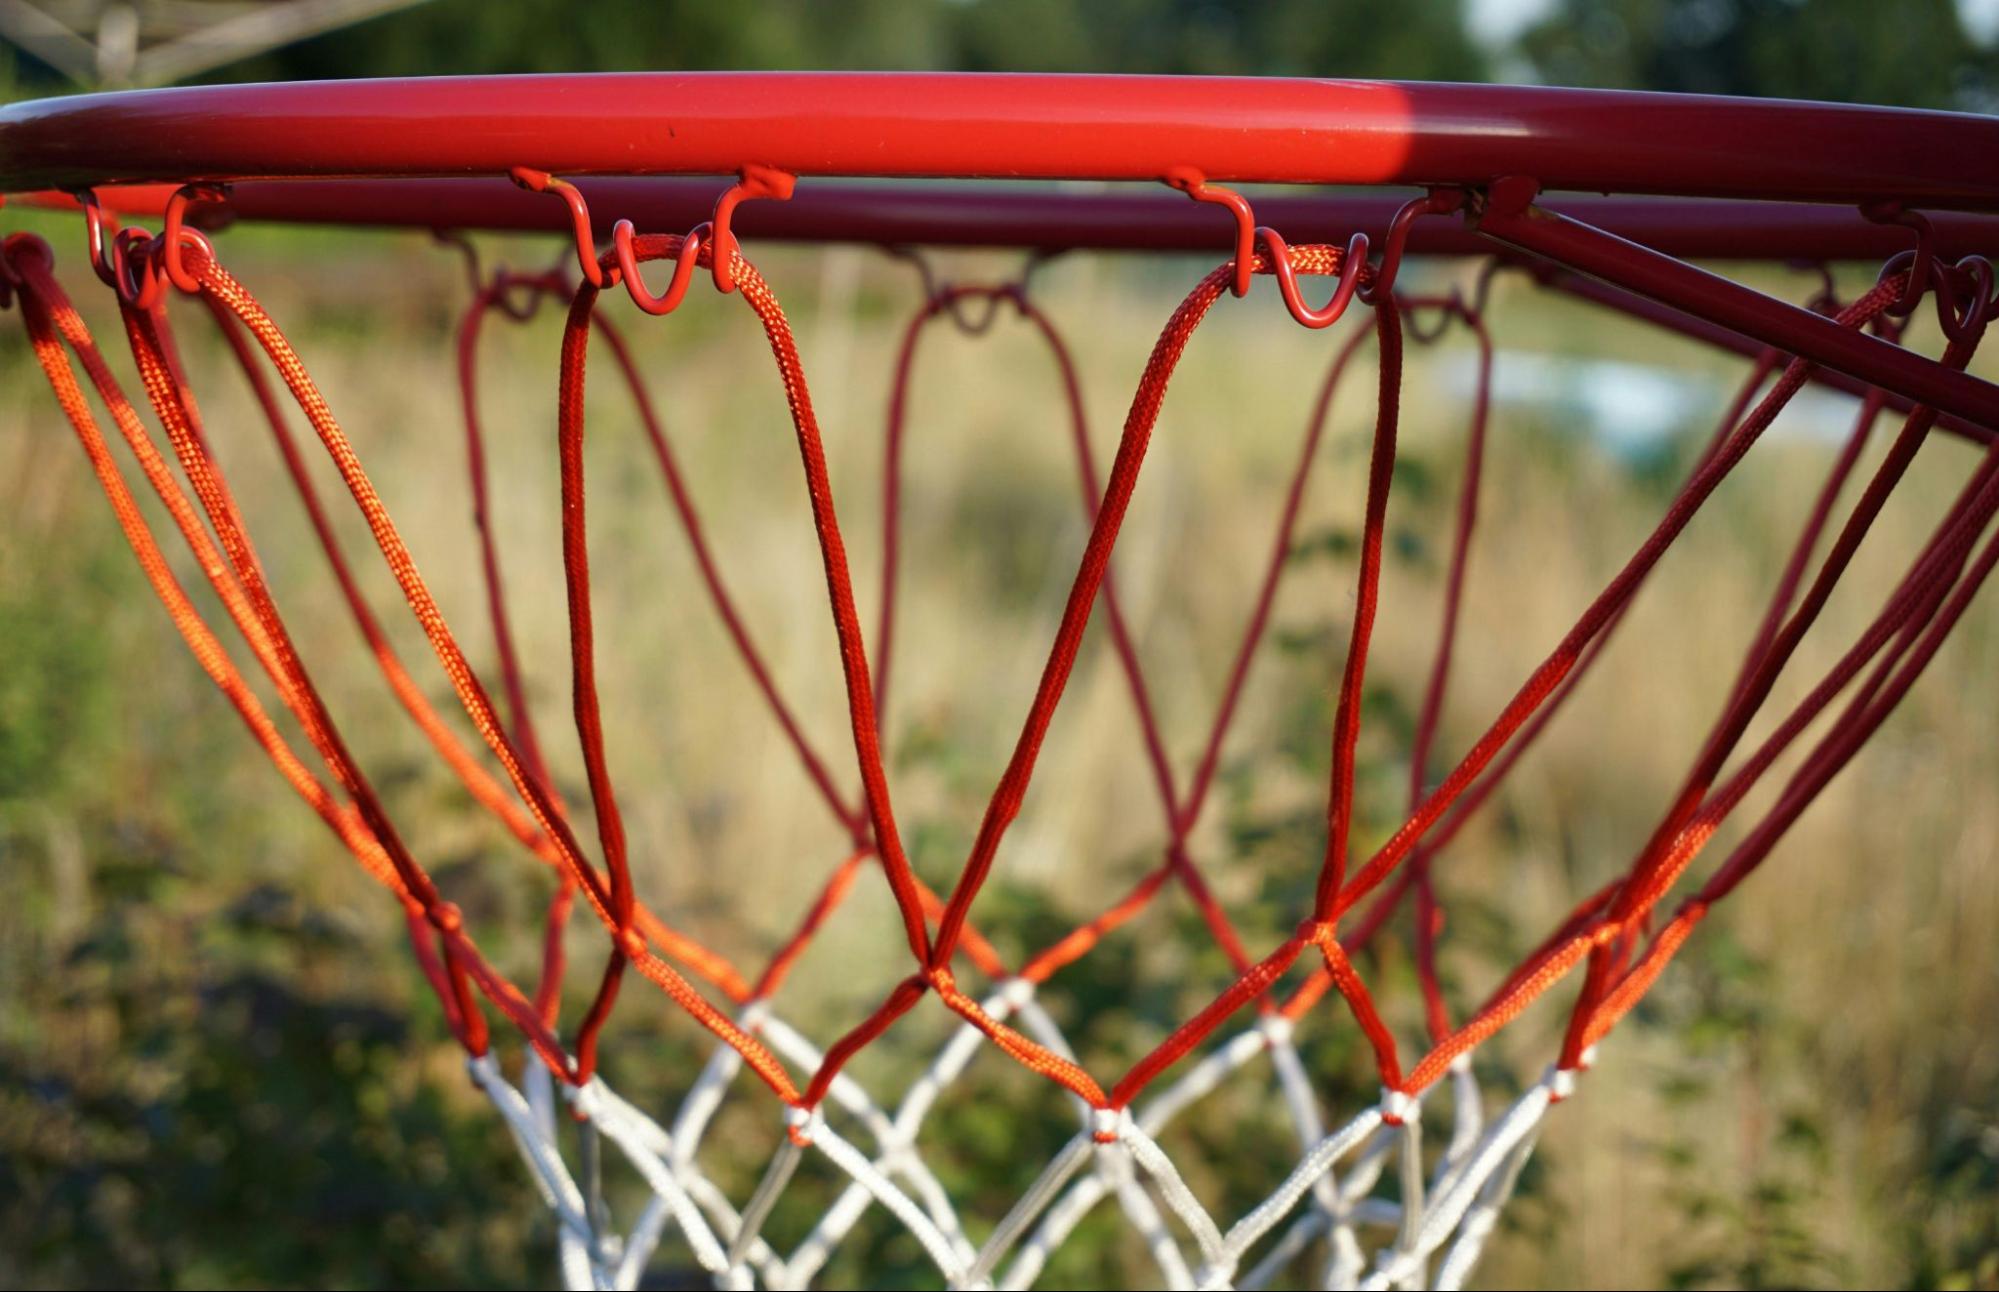 close-up shot of a basketball hoop net